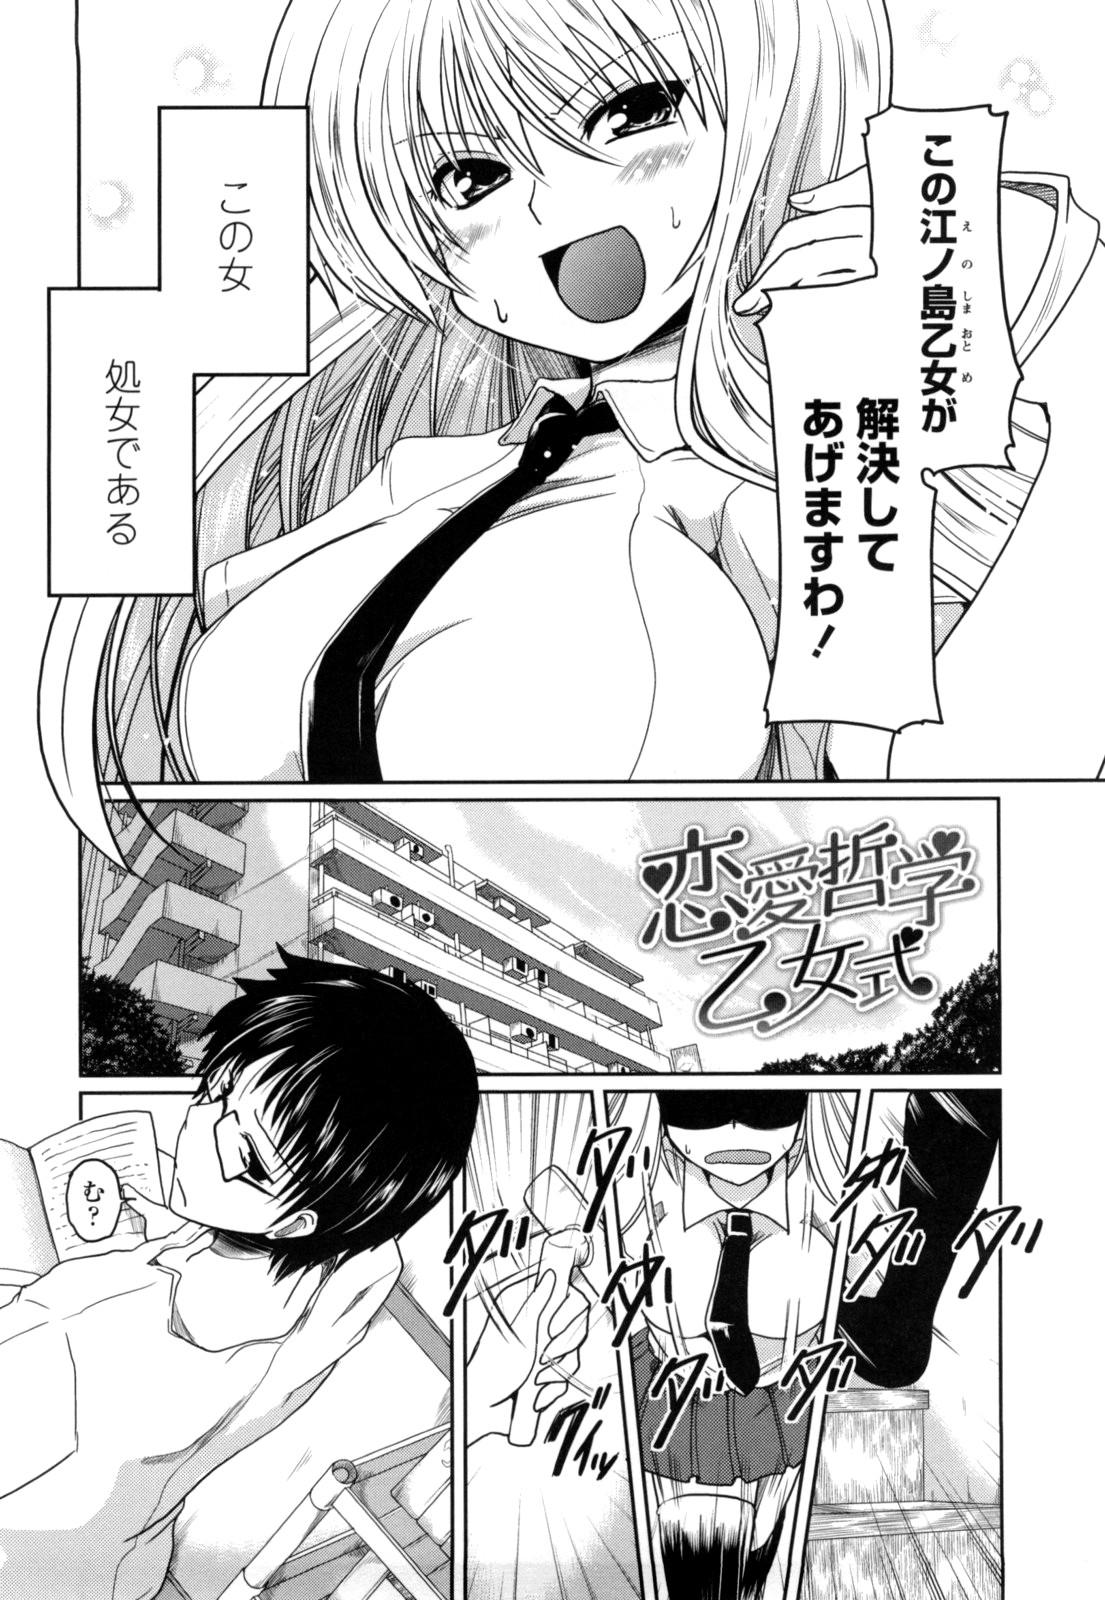 Boobies Imouto to Tsukiau 11 no Houhou Seduction - Page 6